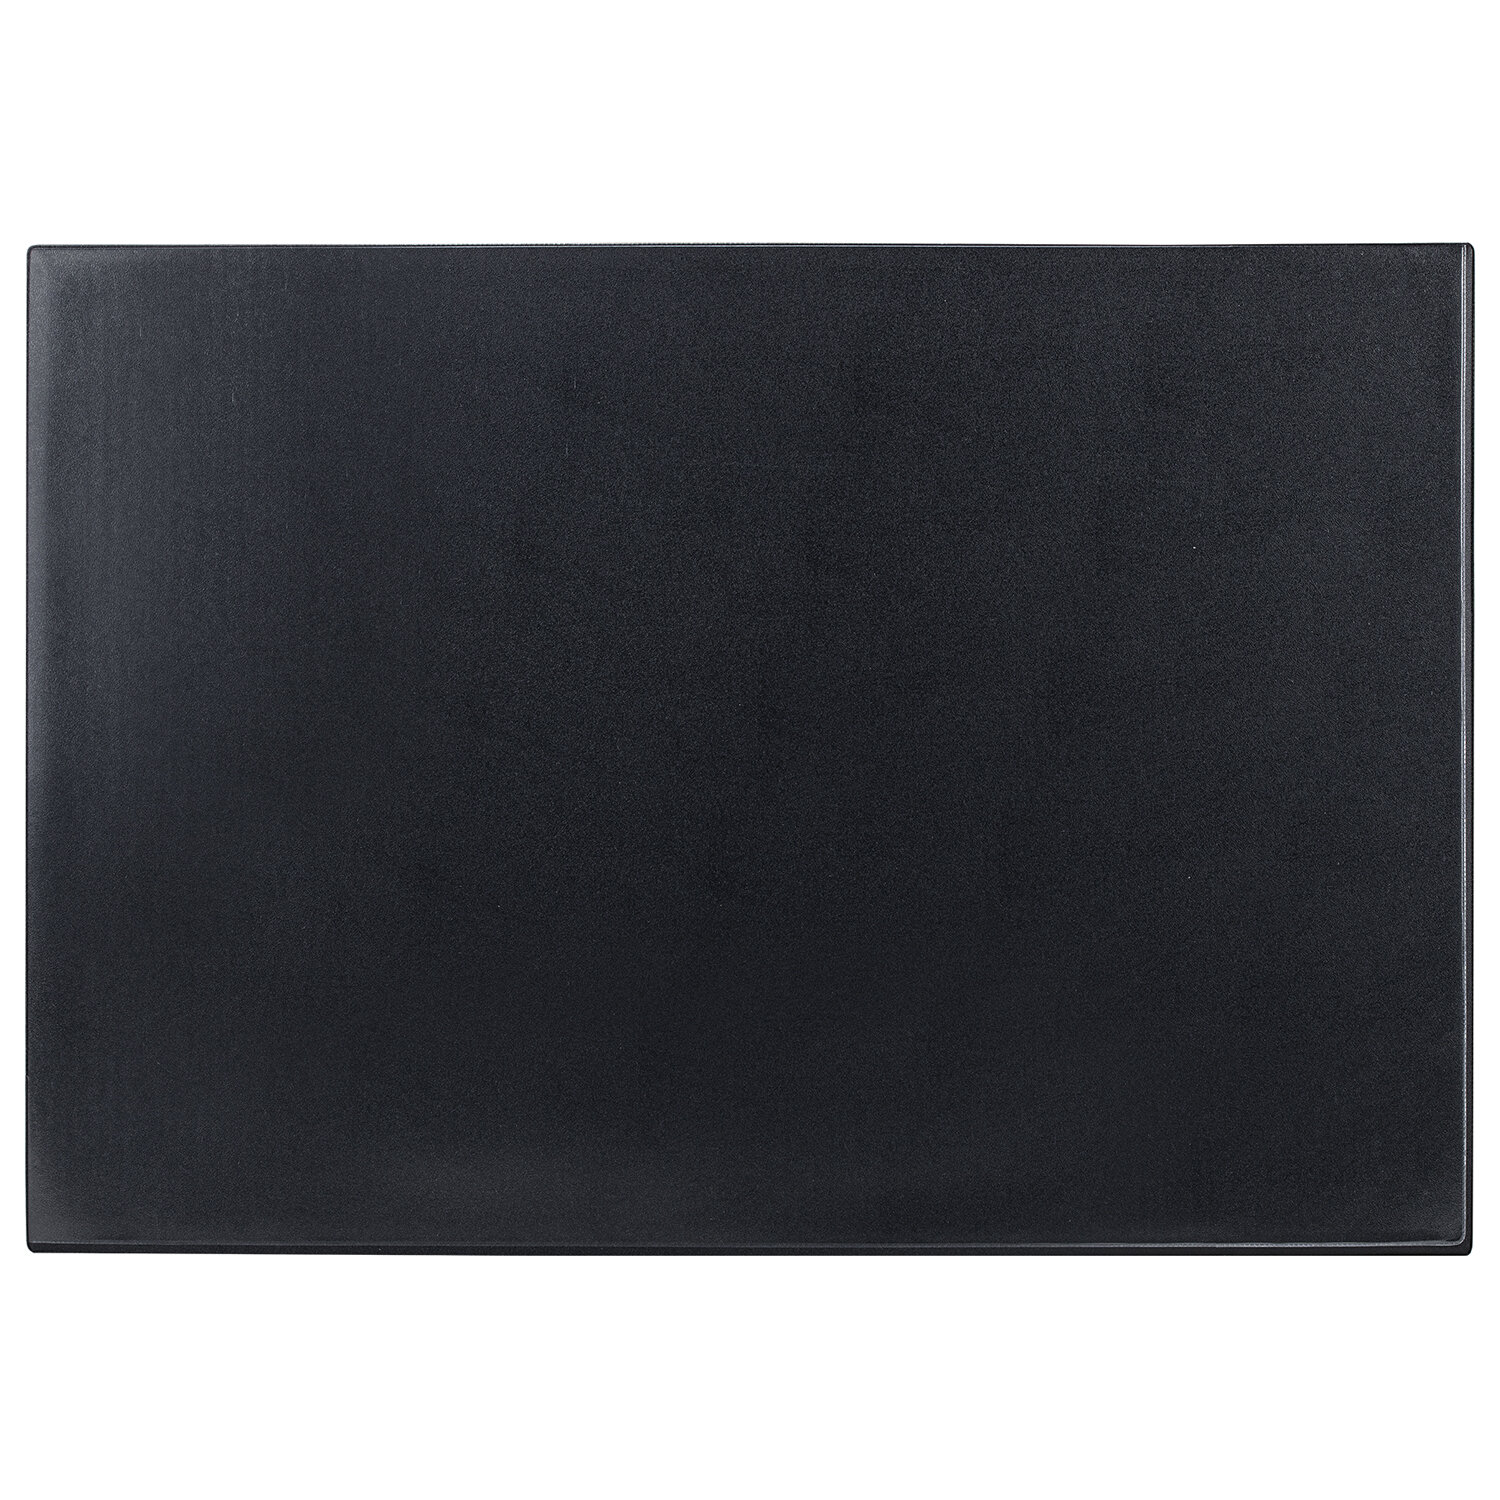 Покрытие BRAUBERG для стола, 650х450х4 мм, цвет черный (236775)